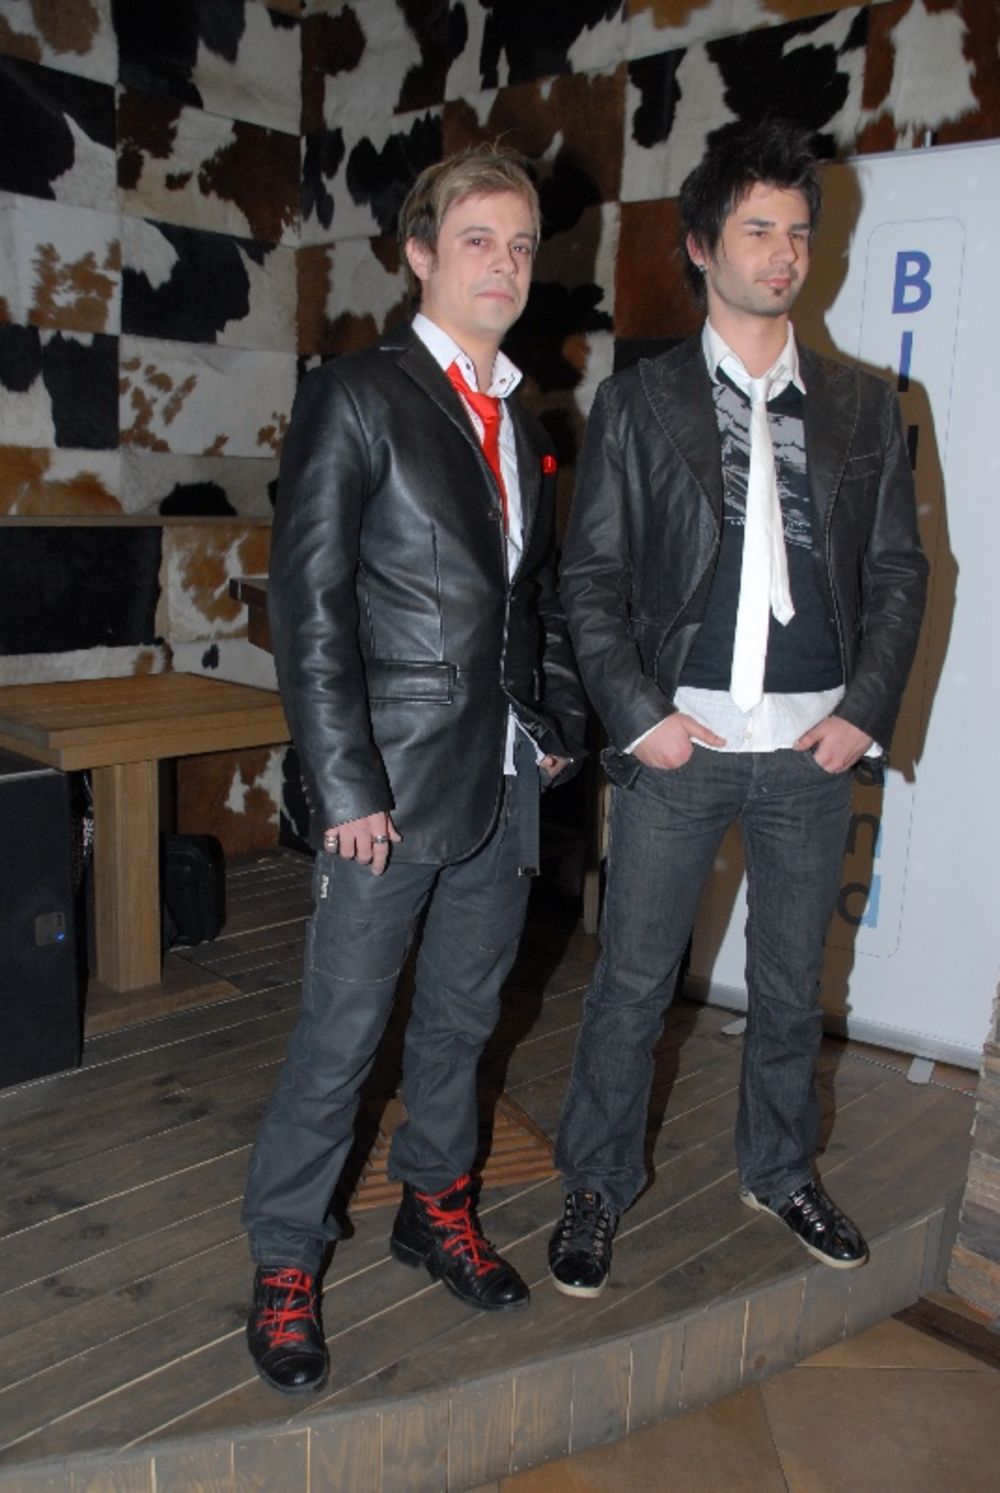 U klubu Nachos u četvrtak je održana promocija dueta In Vivo, a članovi sastava, Neven Živančević i Igor Maljukanović, predstavili su svoje nove pesme i najavili album prvenac Party maniac čiji se izlazak očekuje na proleće 2011. godine